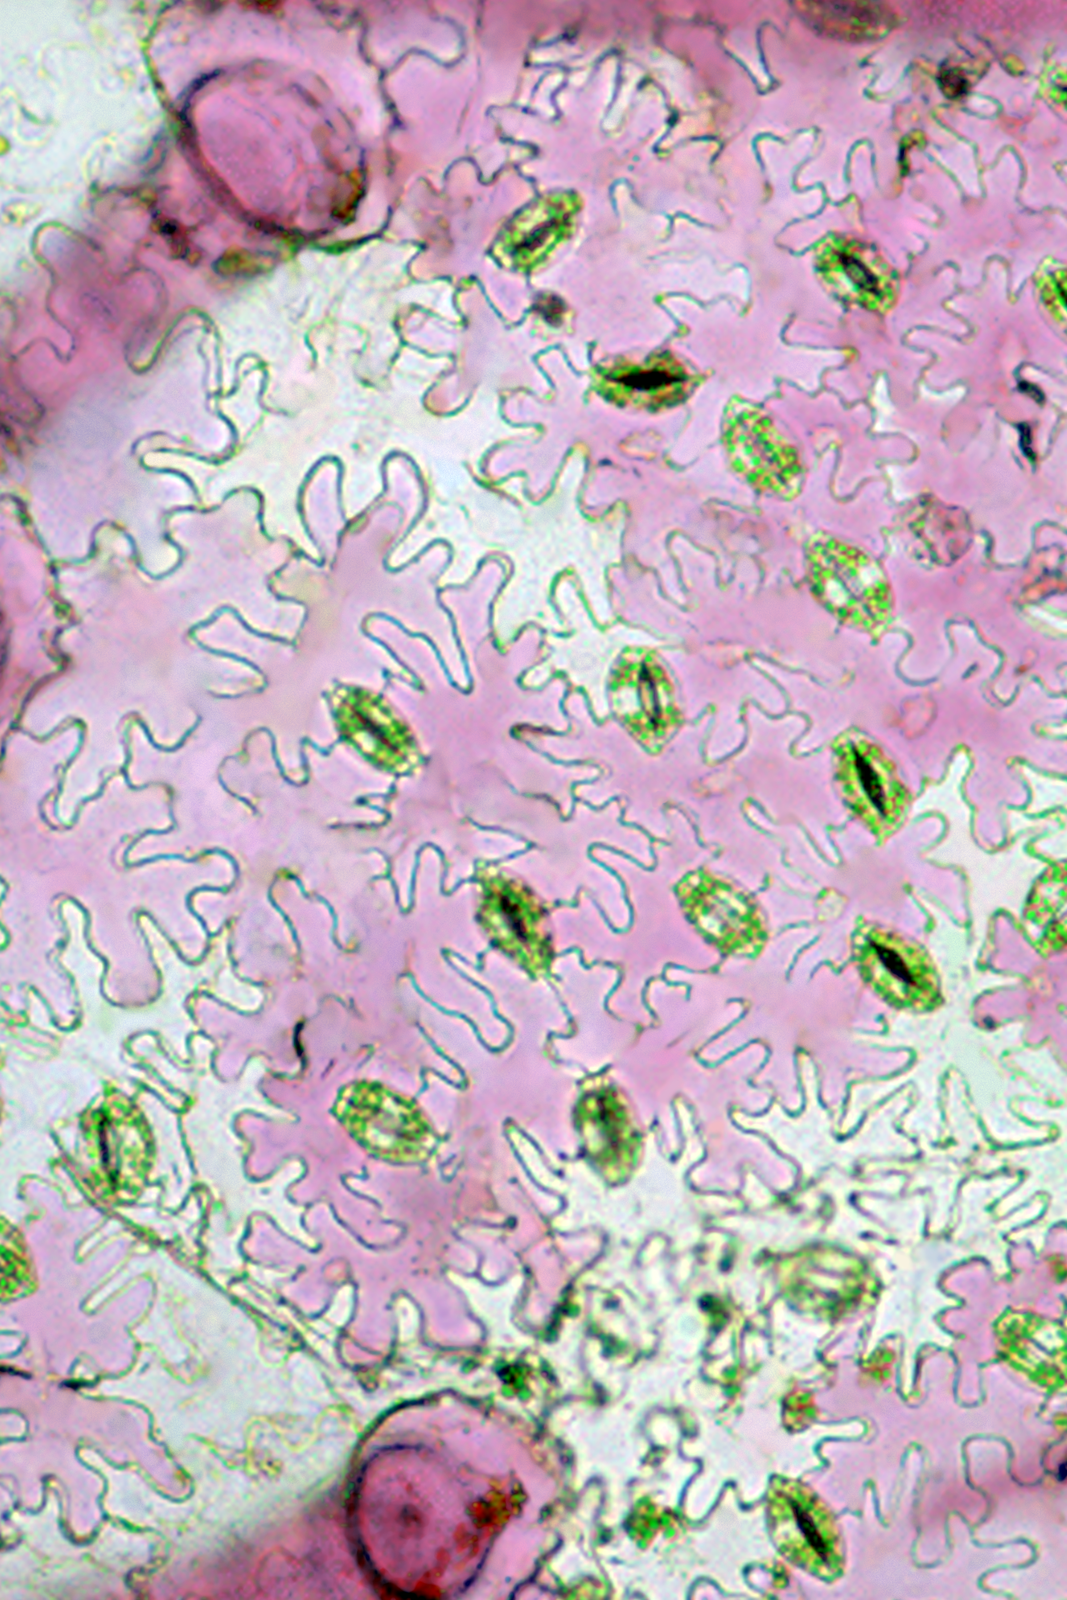 Skórka (epiderma) dolnej strony liścia gynury - Gynura sp. Widoczne są trzy typy komórek skórki: aparaty szparkowe (z chloroplastami), komórki właściwe skórki o falistych ścianach bocznych oraz włoski mechaniczne